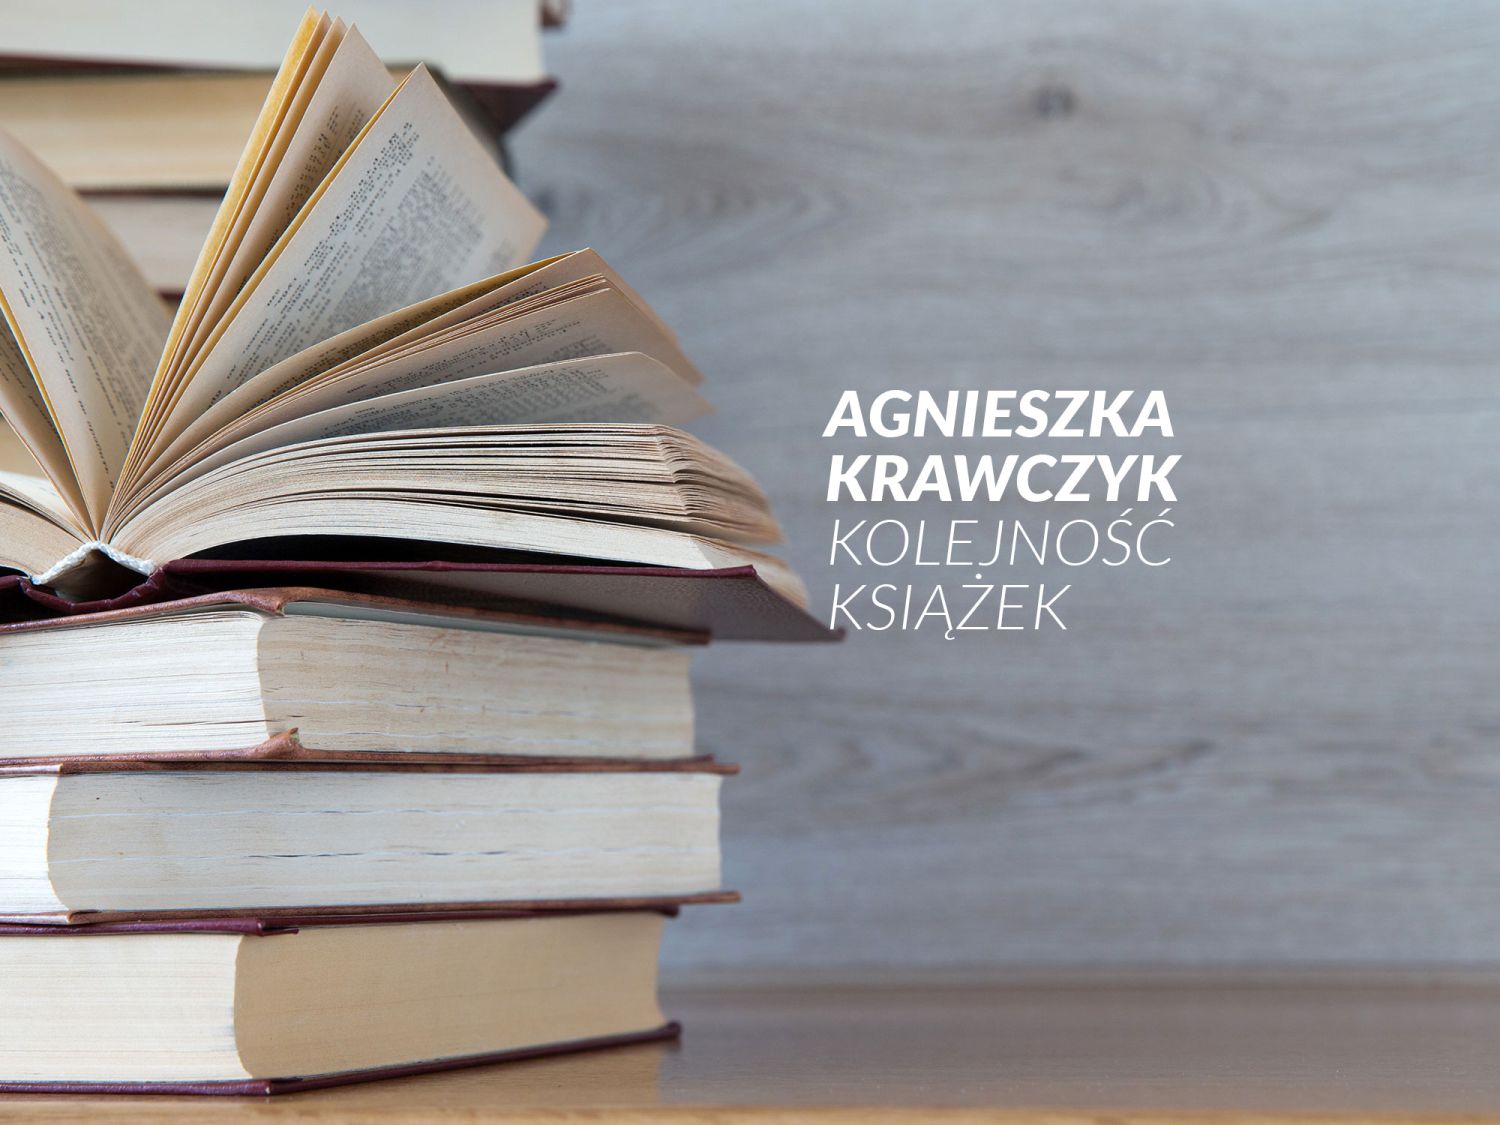 Jaka jest kolejność książek wydanych przez Agnieszkę Krawczyk?